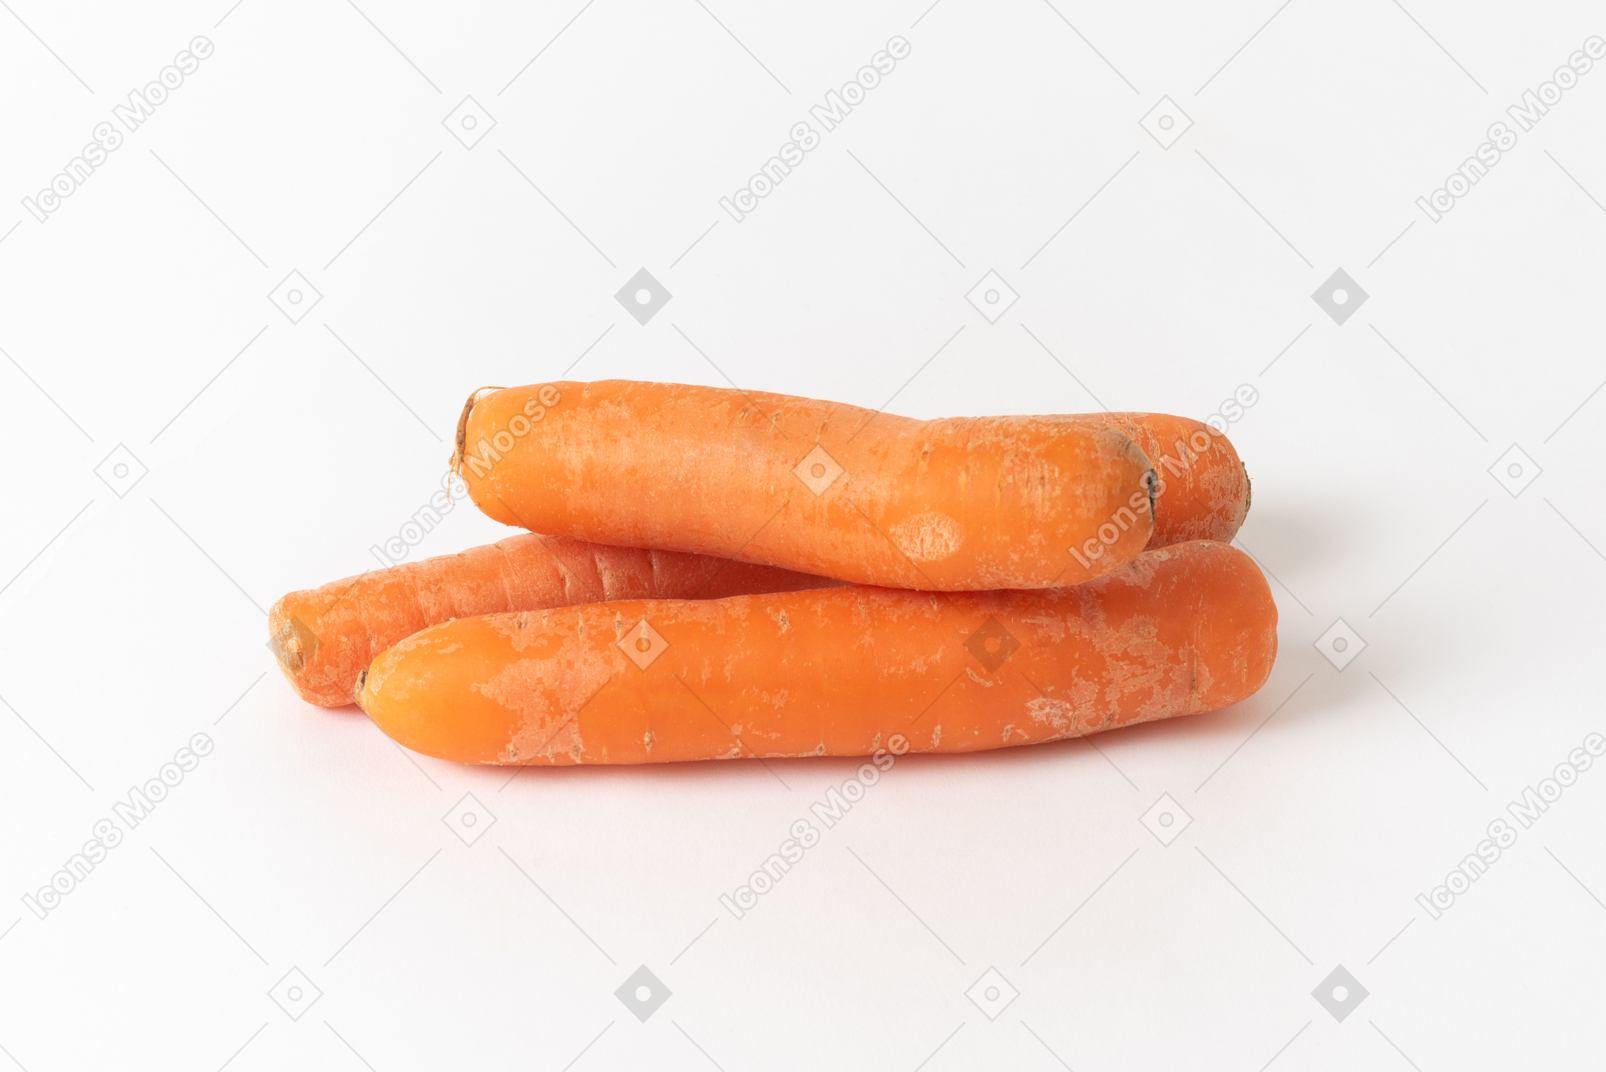 Zanahorias sobre un fondo blanco